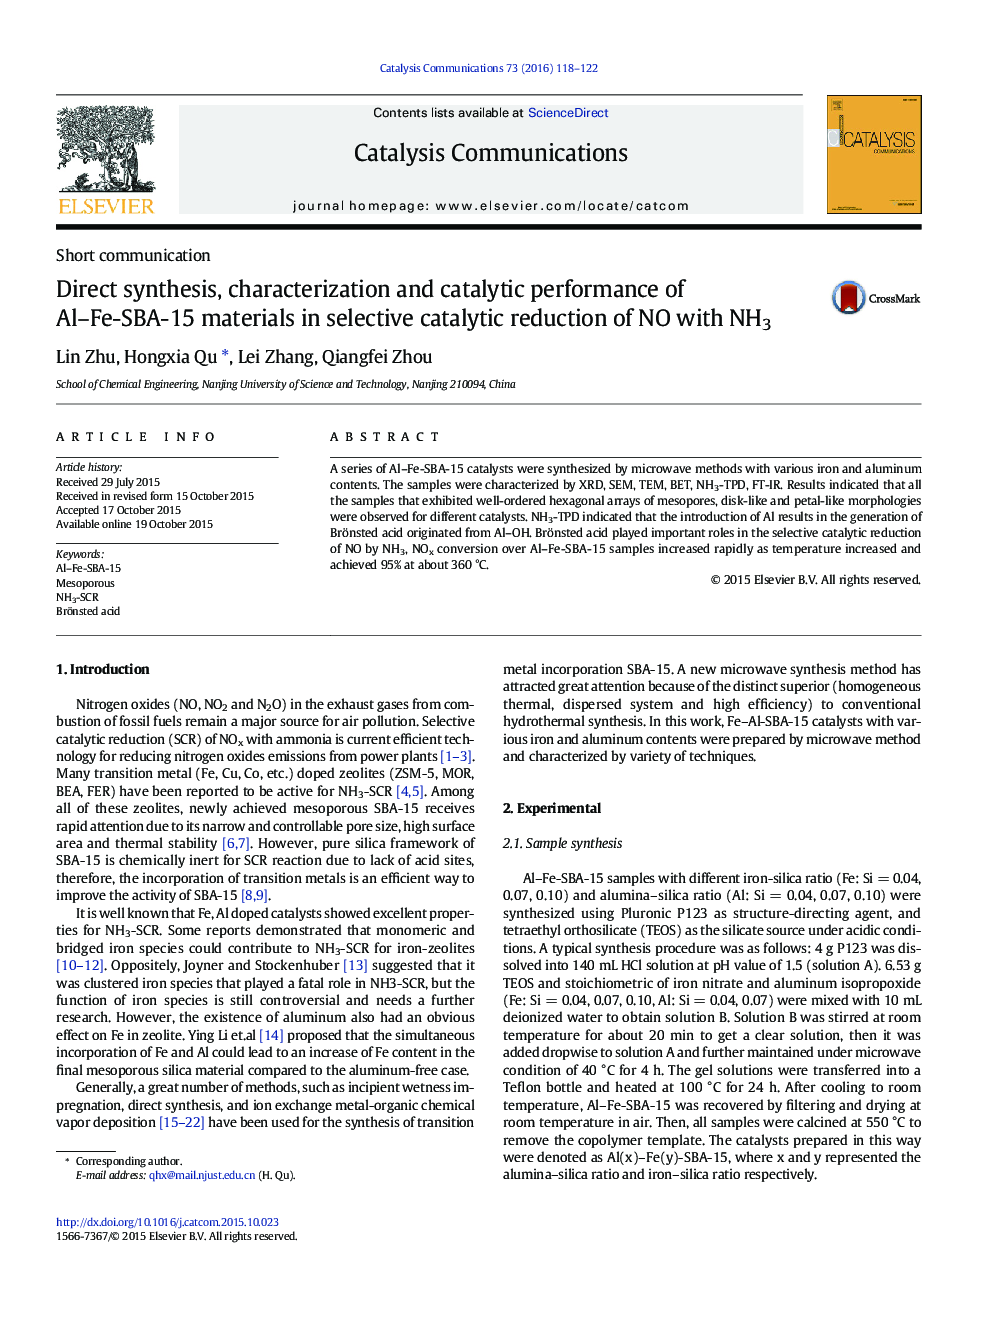 سنتز مستقیم، خصوصیات و عملکرد کاتالیزوری مواد Al-Fe-SBA-15 در کاهش کاتالیزوری انتخابی NO با NH3